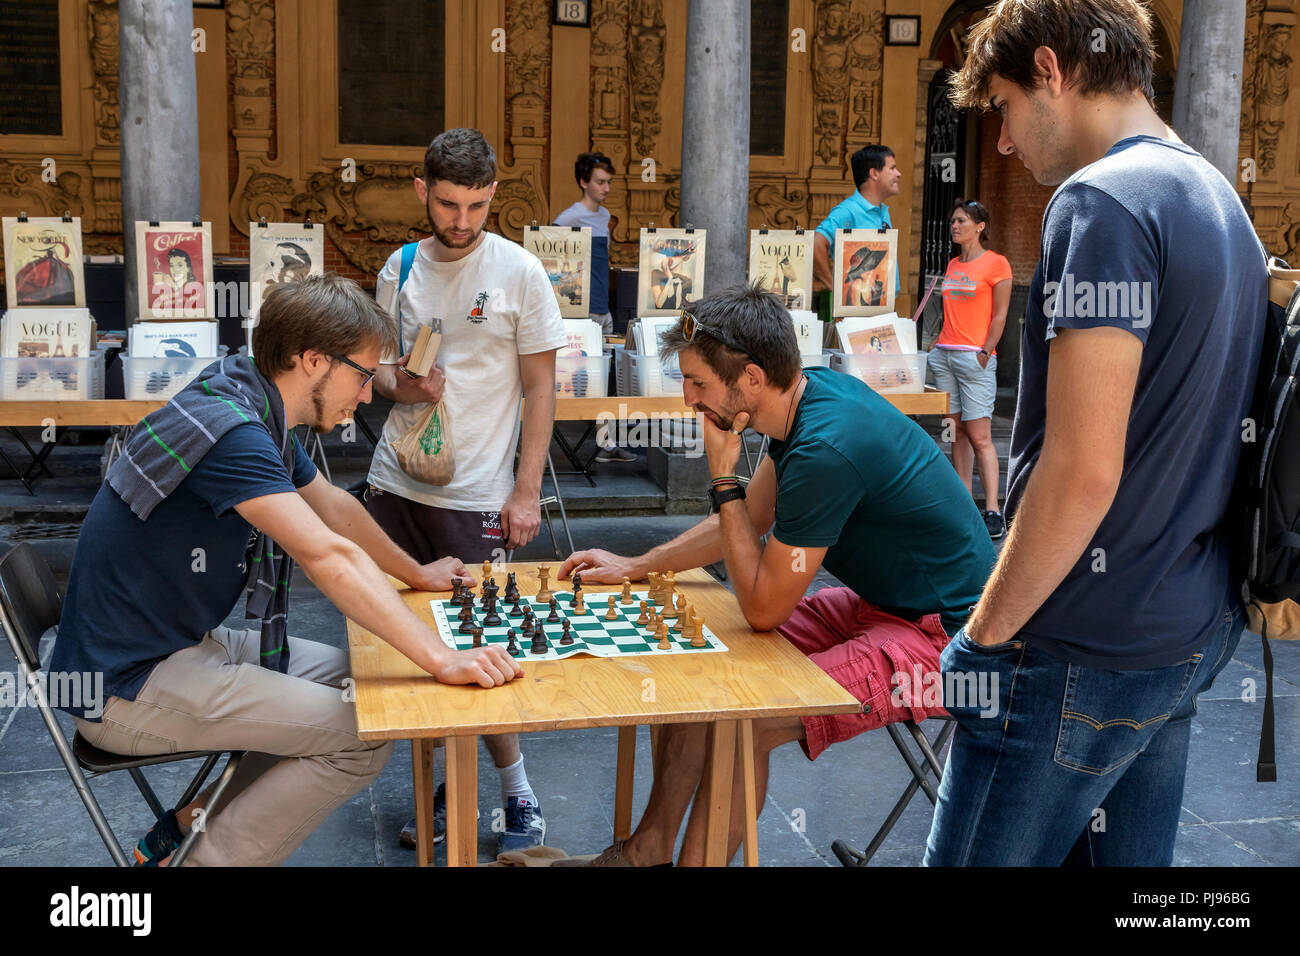 Deux hommes jouant aux échecs dans le vieux livre, musique et marché d'antiquités, tenue à Vielle Bourse de Lille, Place du Général de Gaulle, Lille, France Banque D'Images